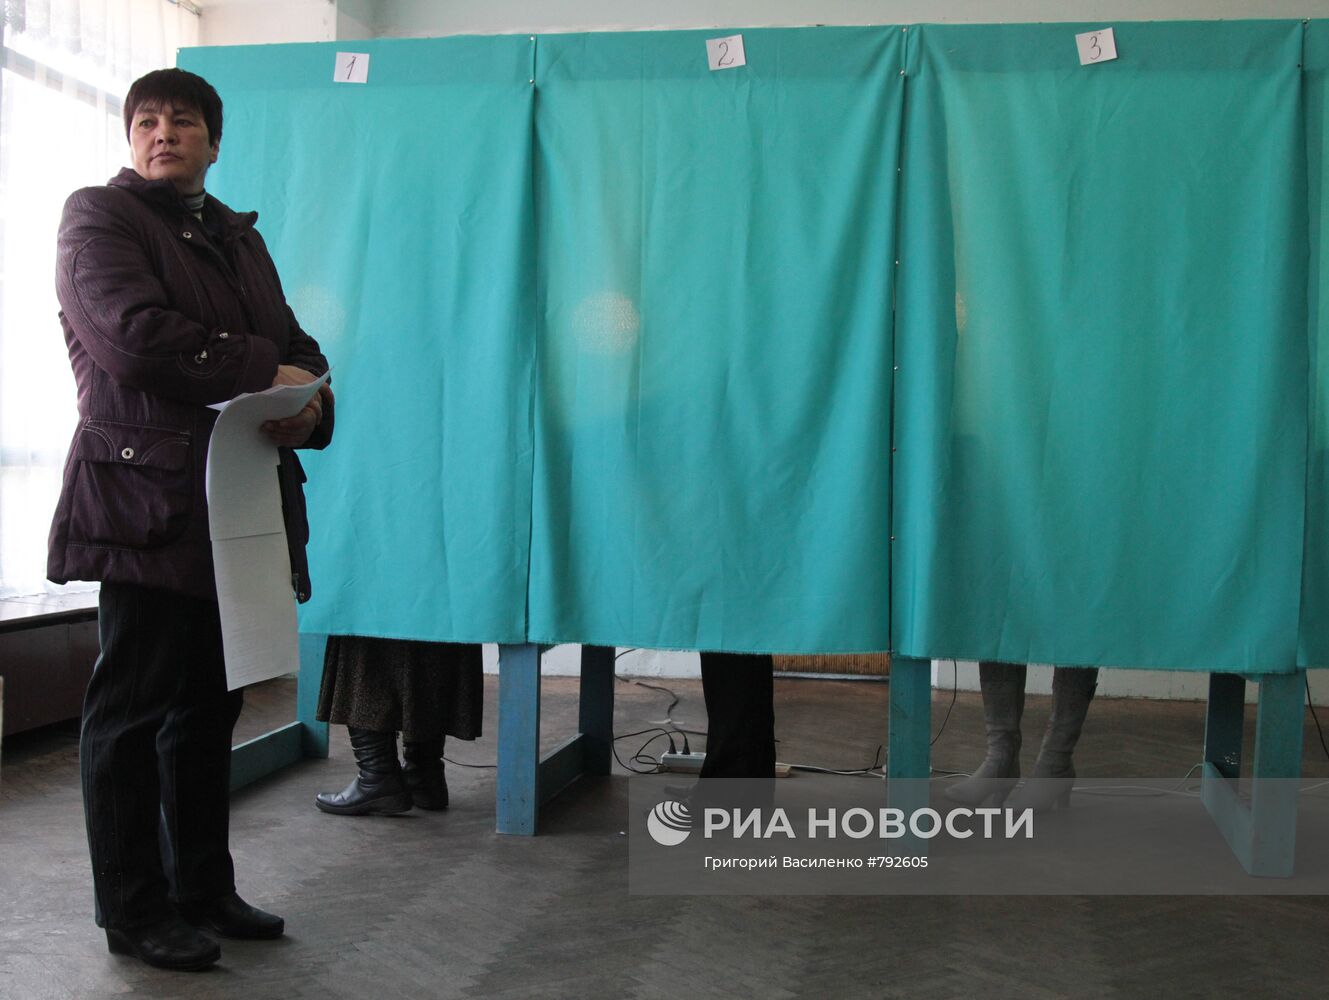 Выборы в местные органы власти Украины